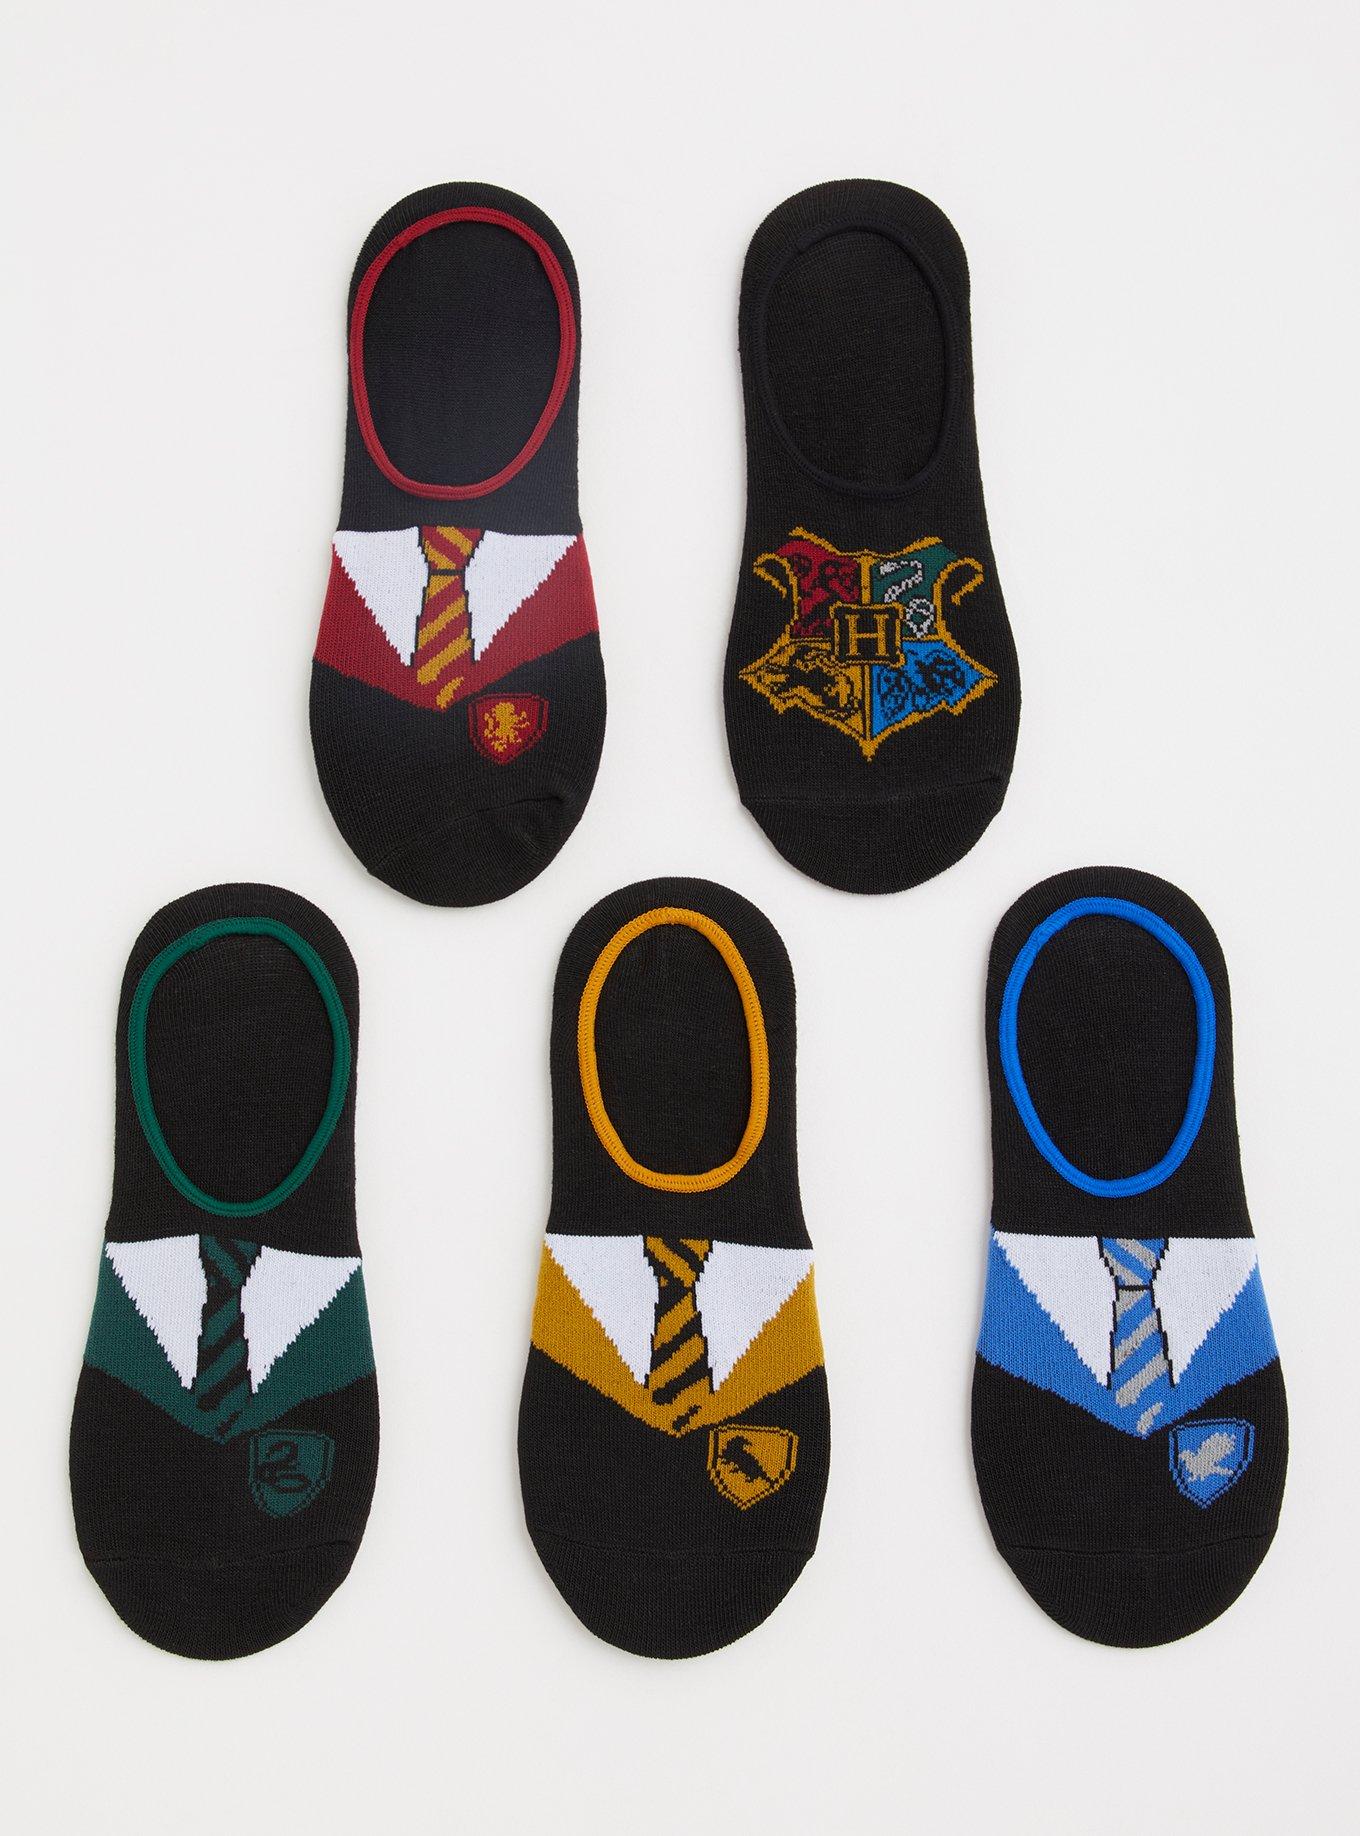 Harry Potter Slytherin House Snuggle Socks